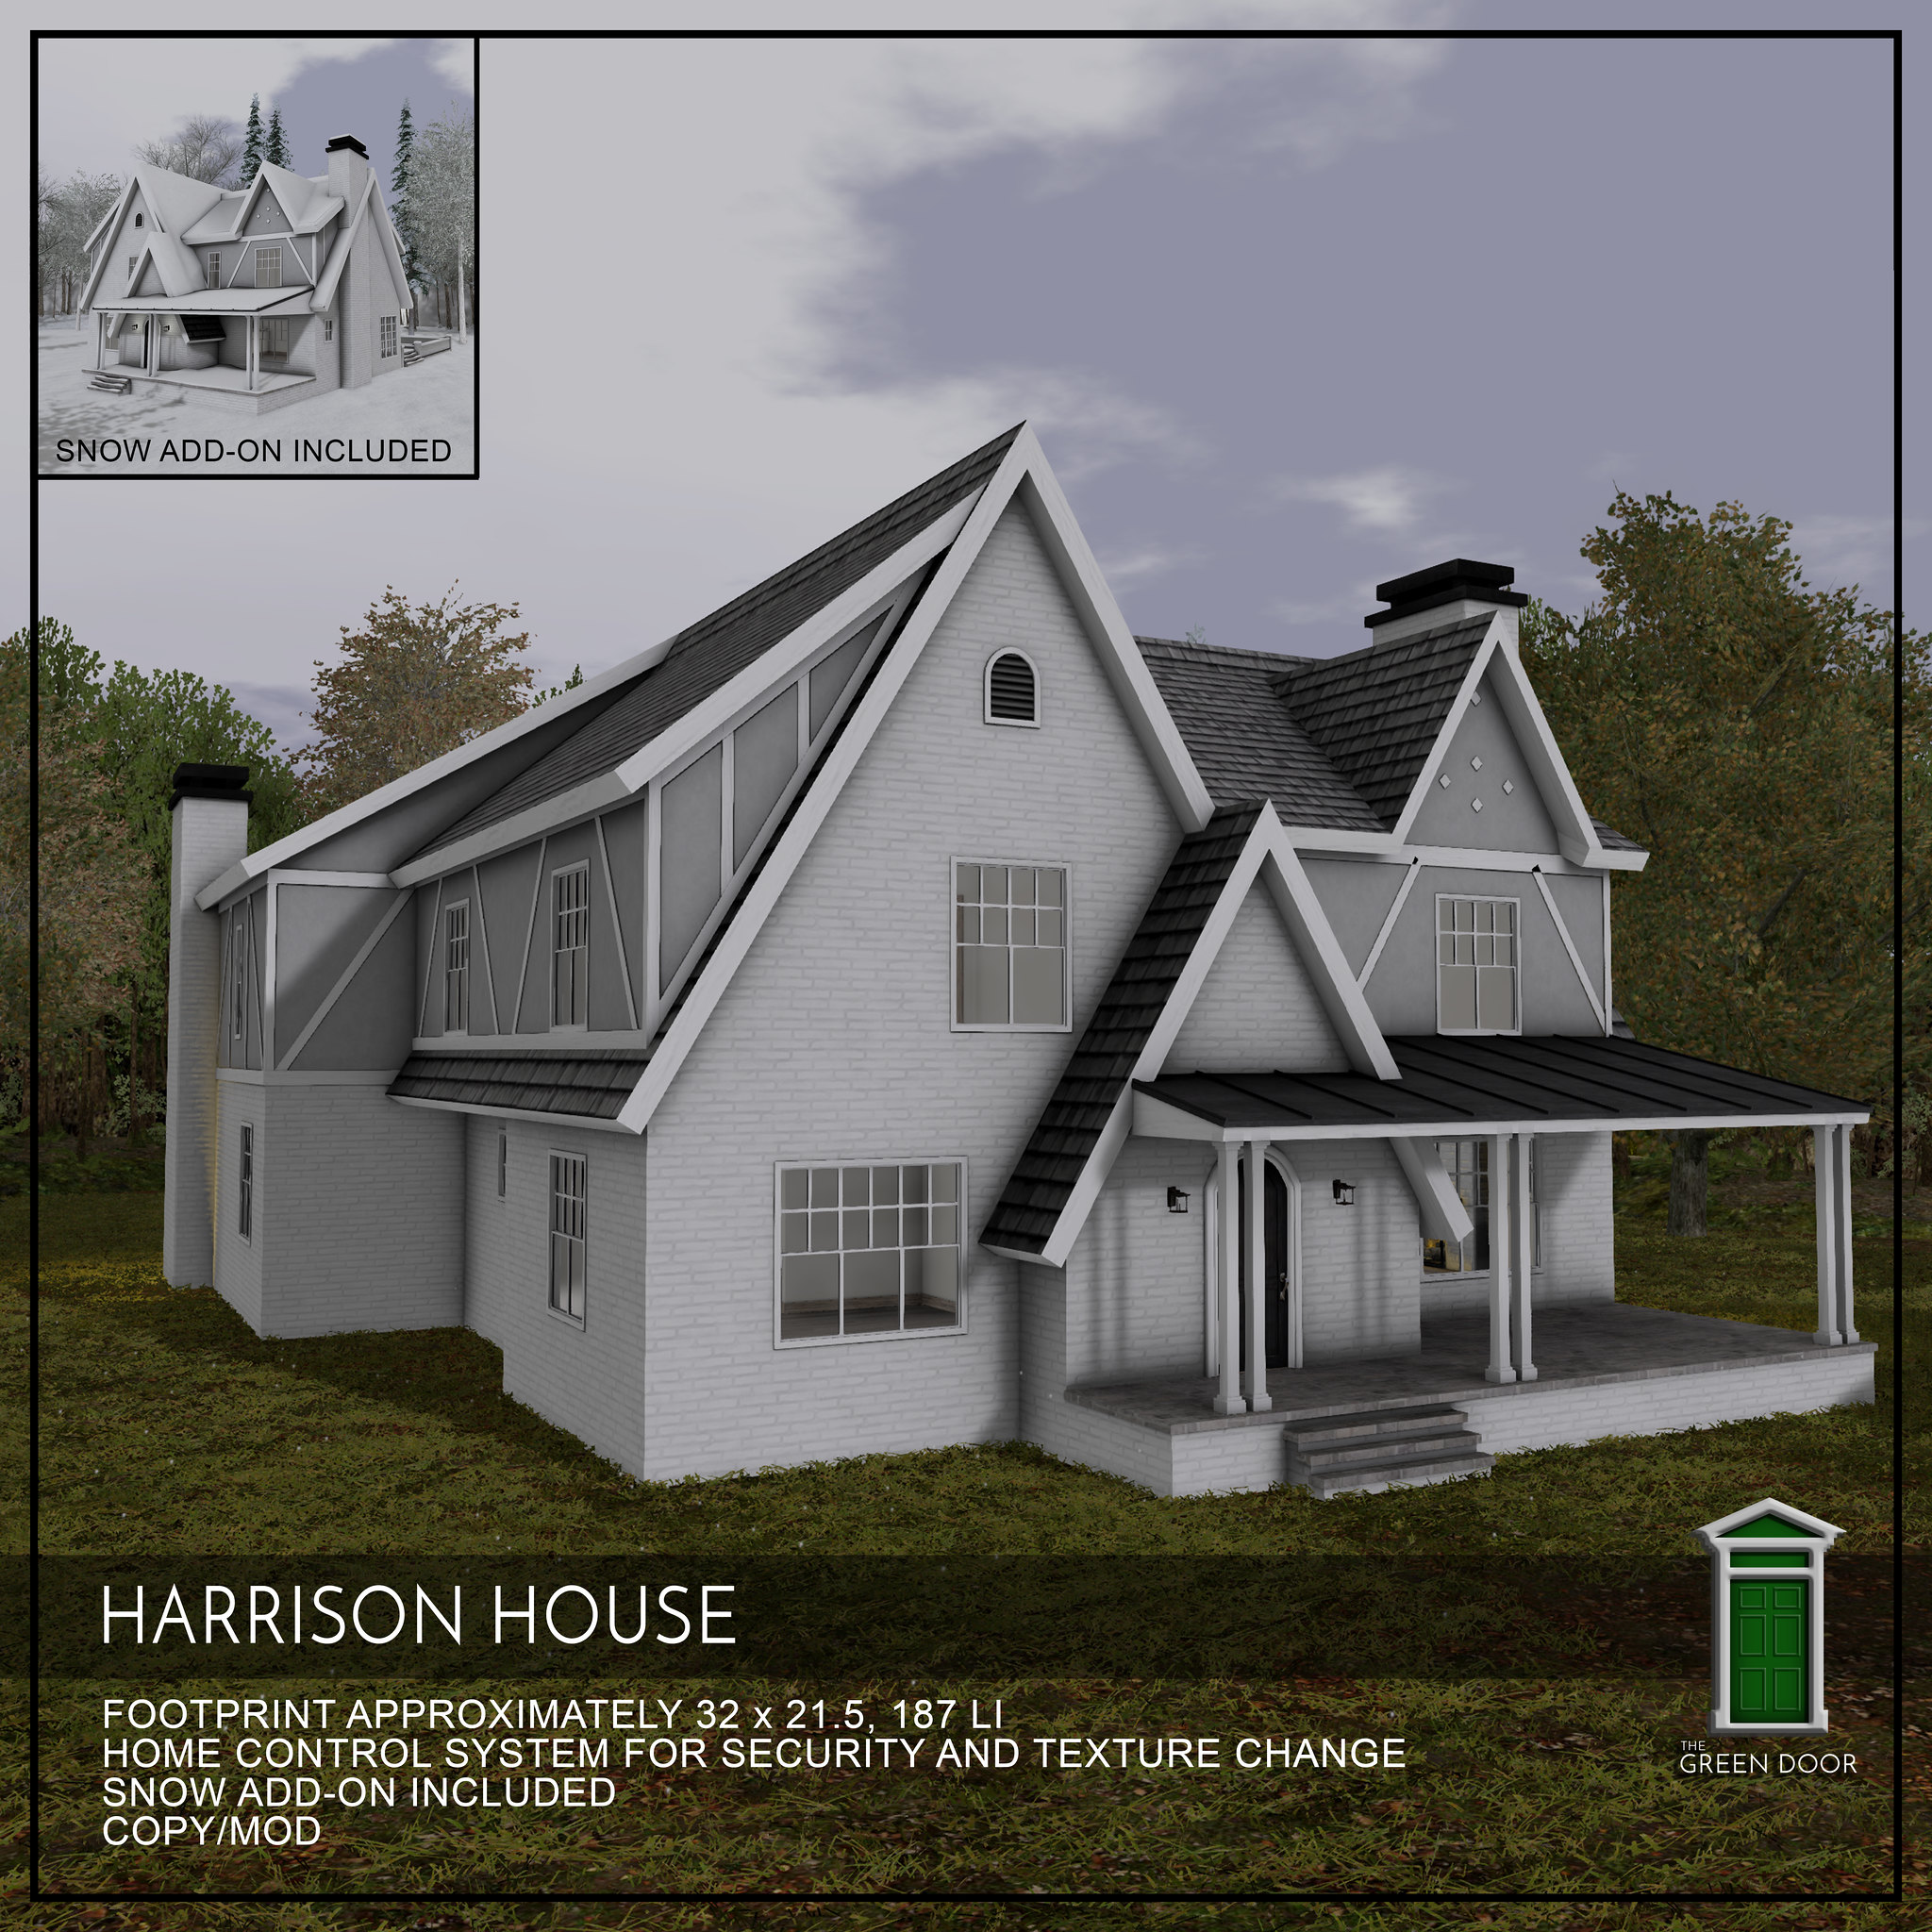 The Green Door – Harrison House